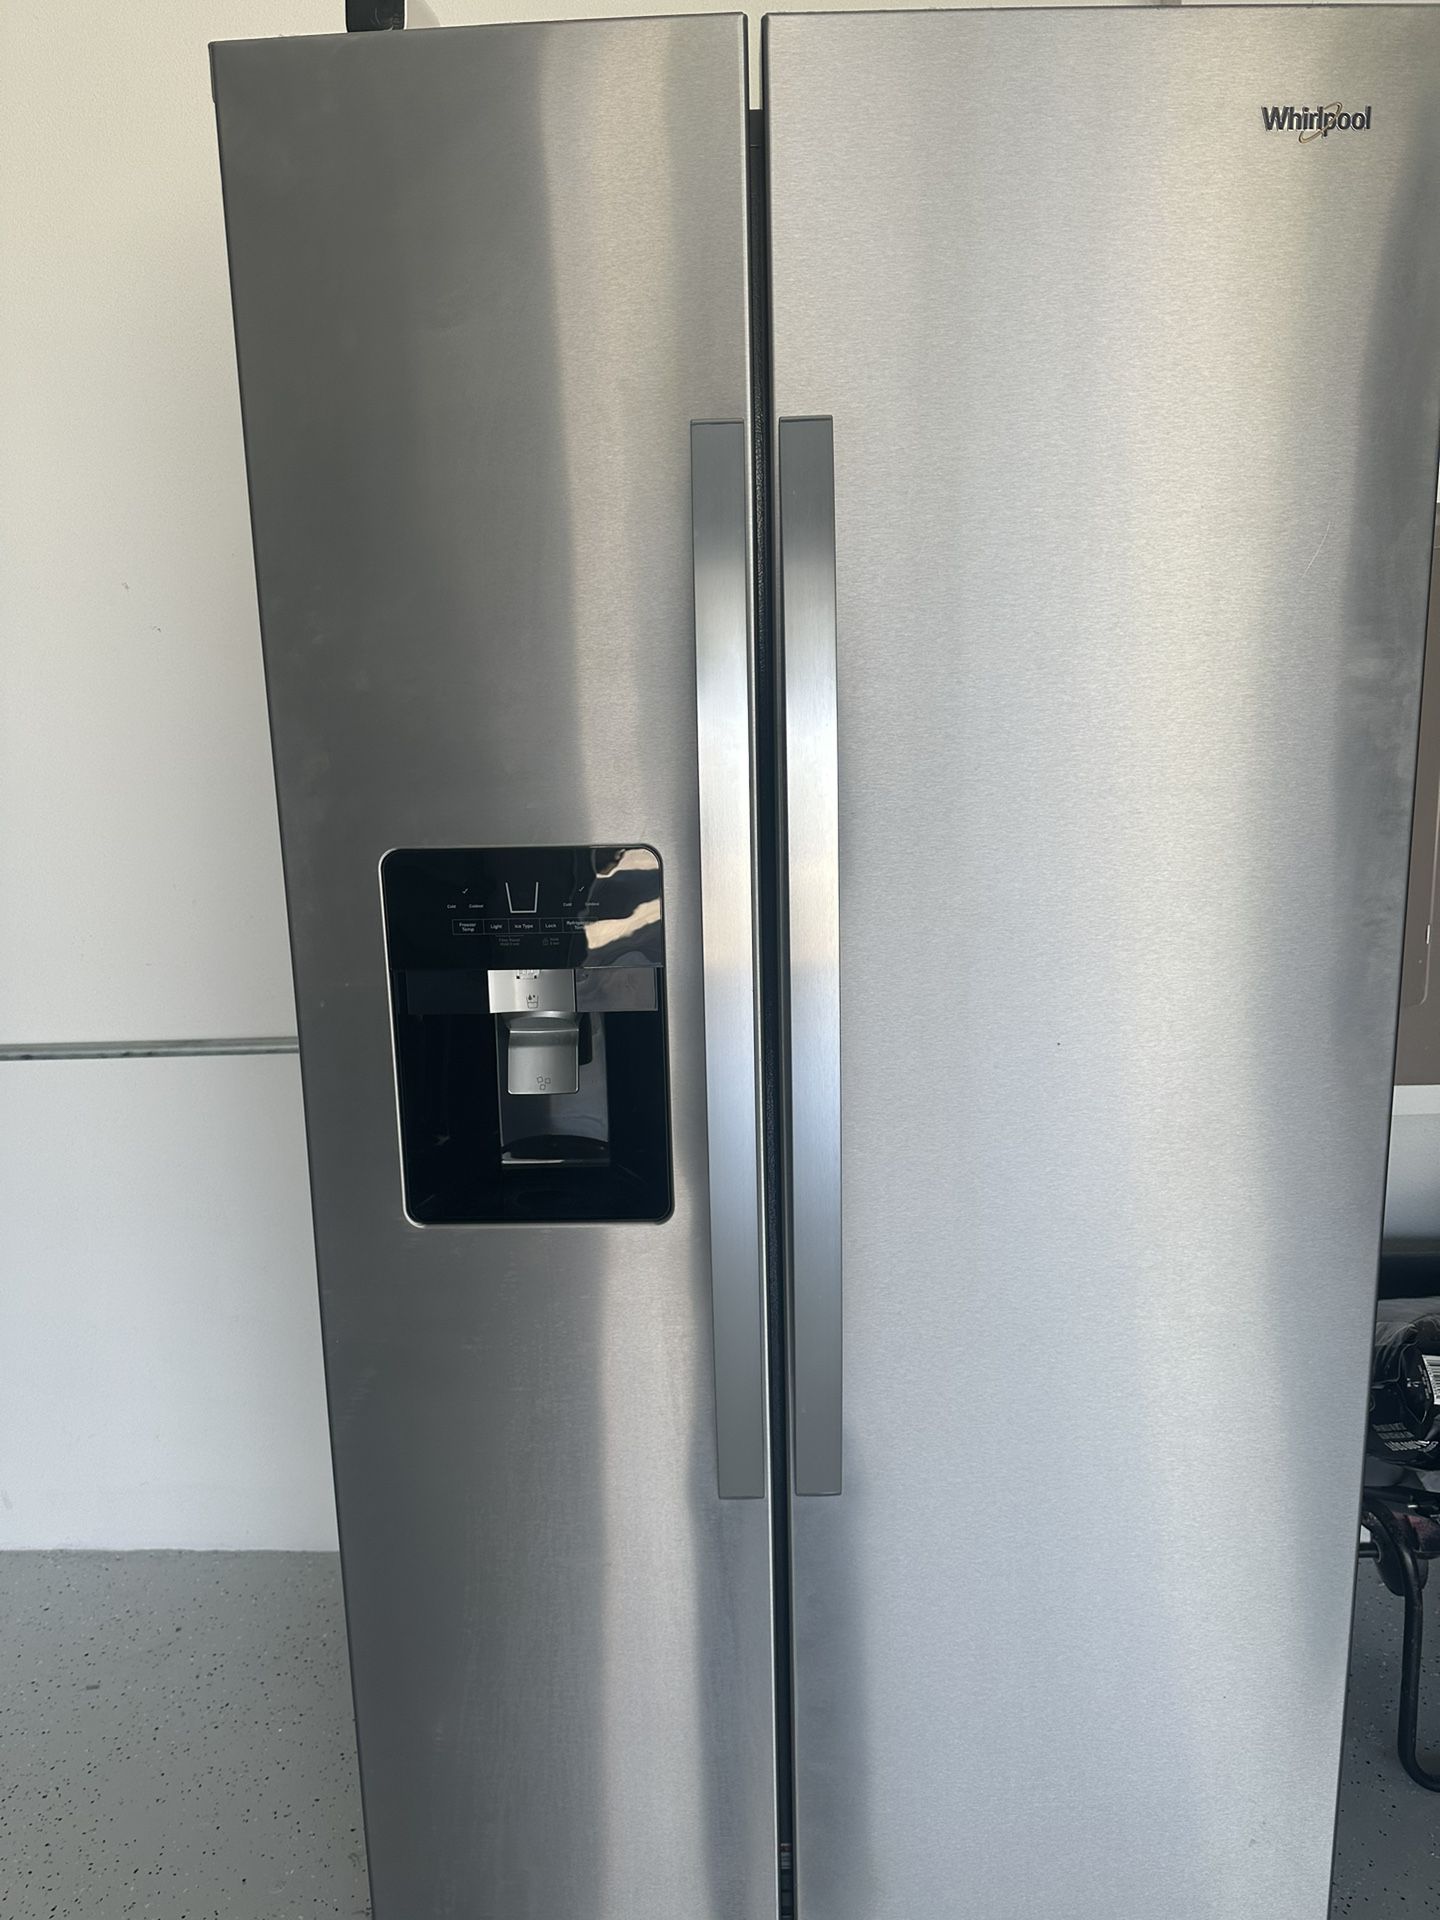 WHIRLPOOL New Refrigerator 